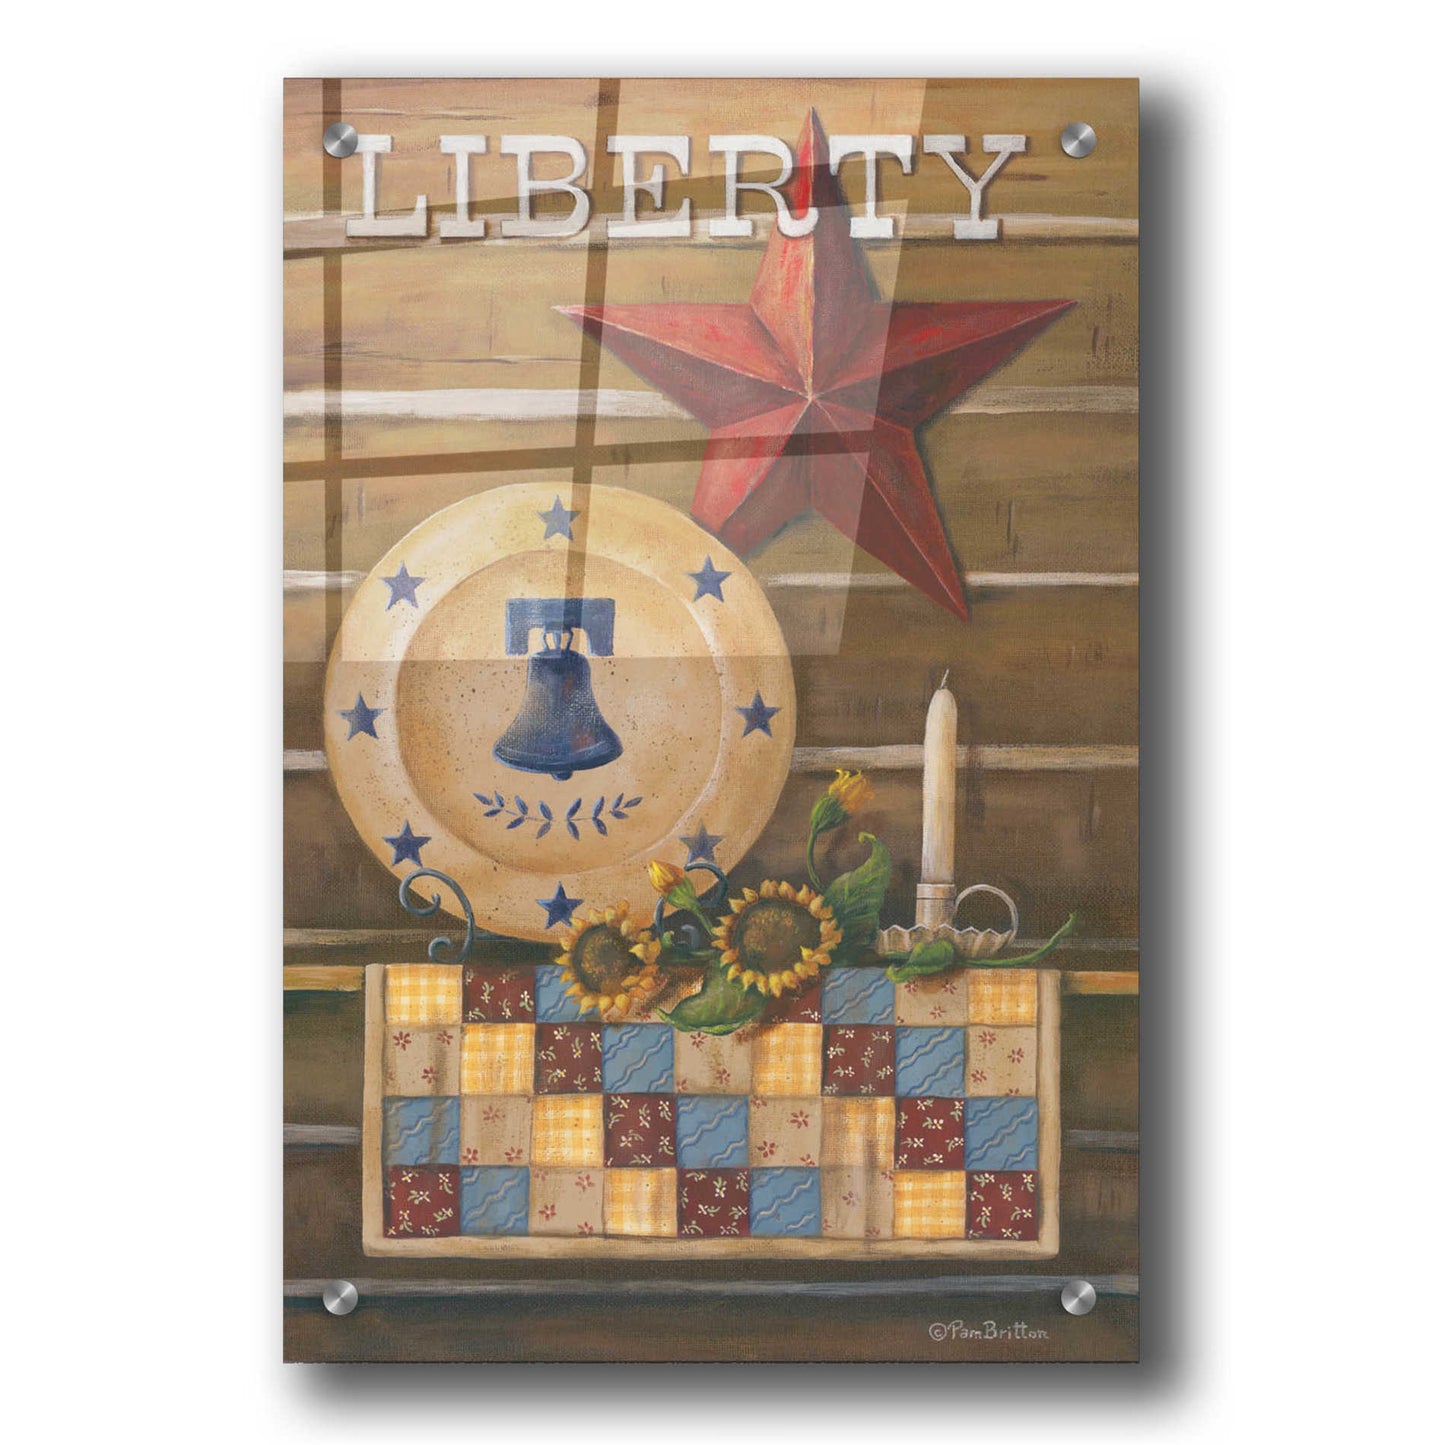 Epic Art 'Liberty' by Pam Britton, Acrylic Glass Wall Art,24x36